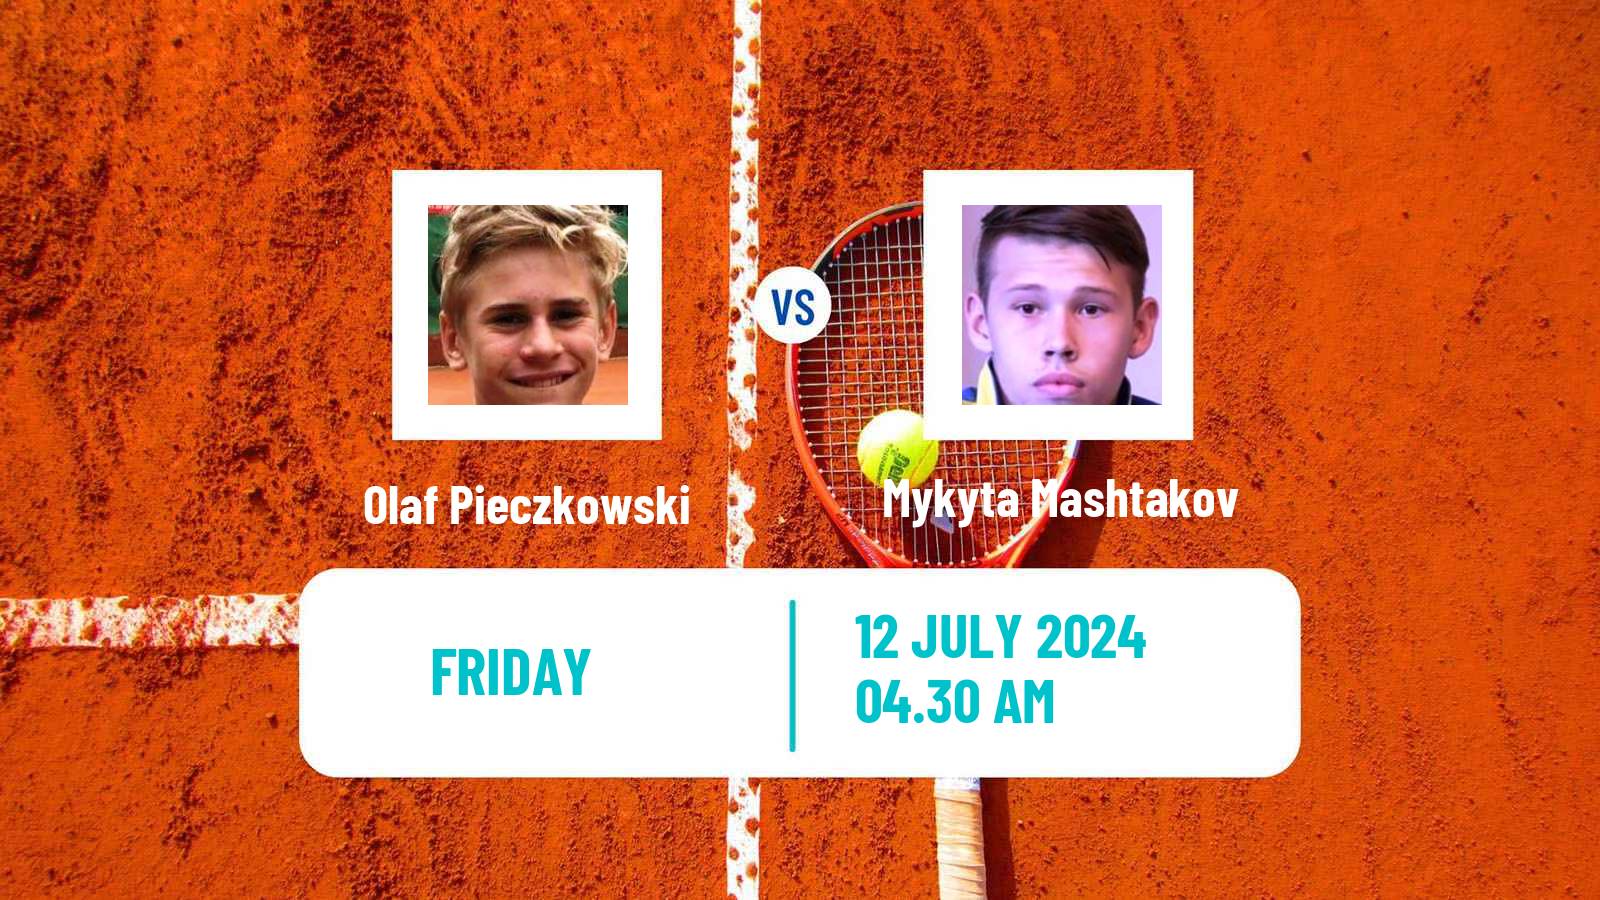 Tennis ITF M15 Lodz Men Olaf Pieczkowski - Mykyta Mashtakov